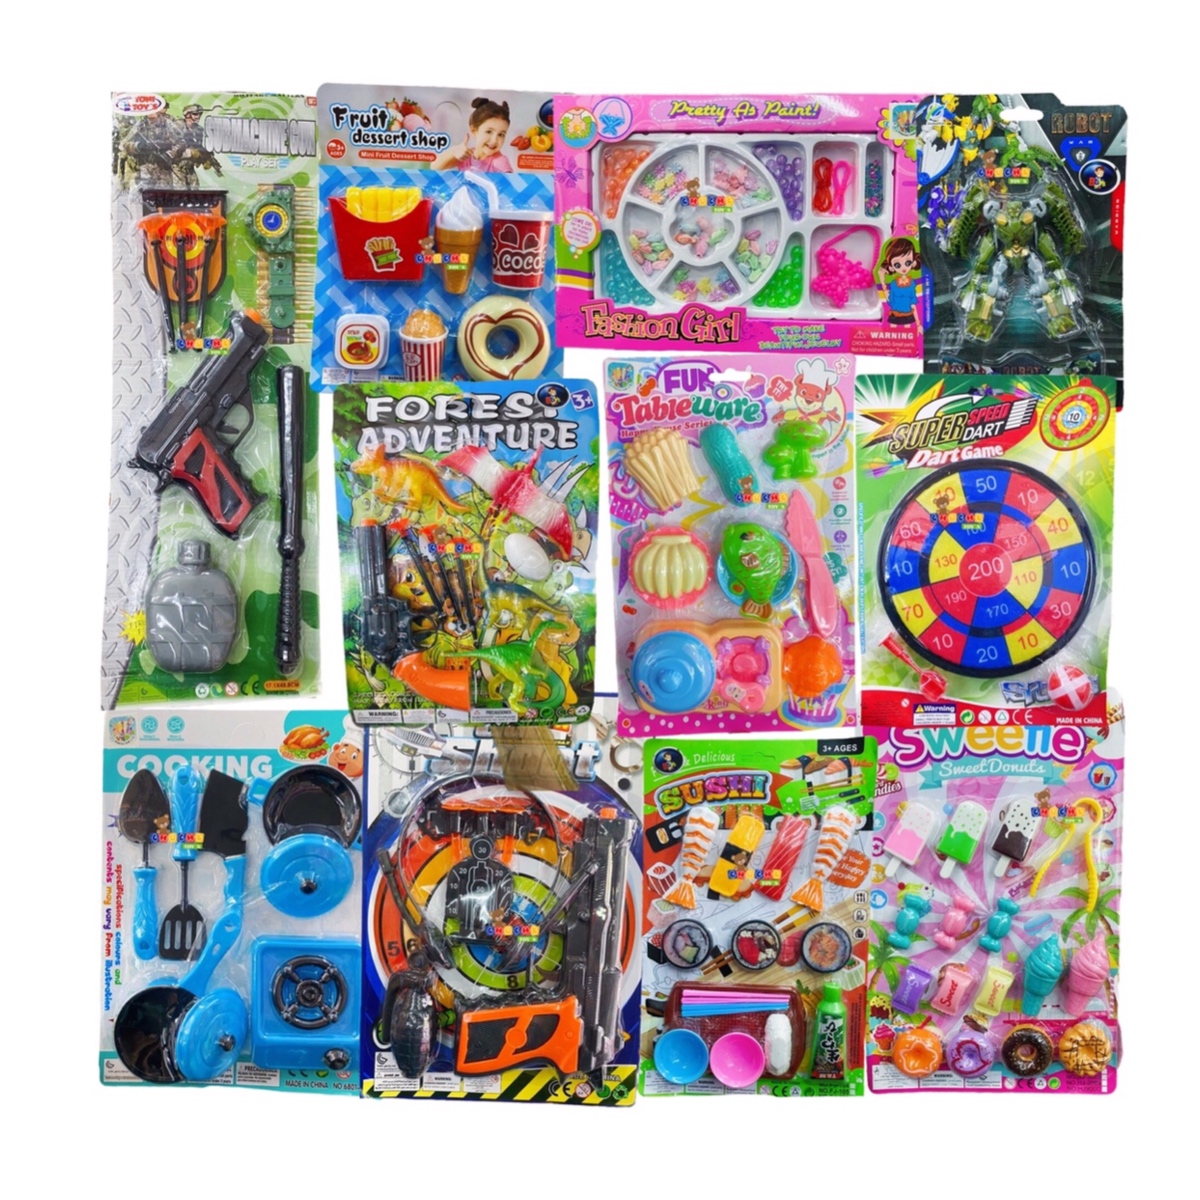 10 paquetes juguetes de baño para bebés Juegos de juguetes de